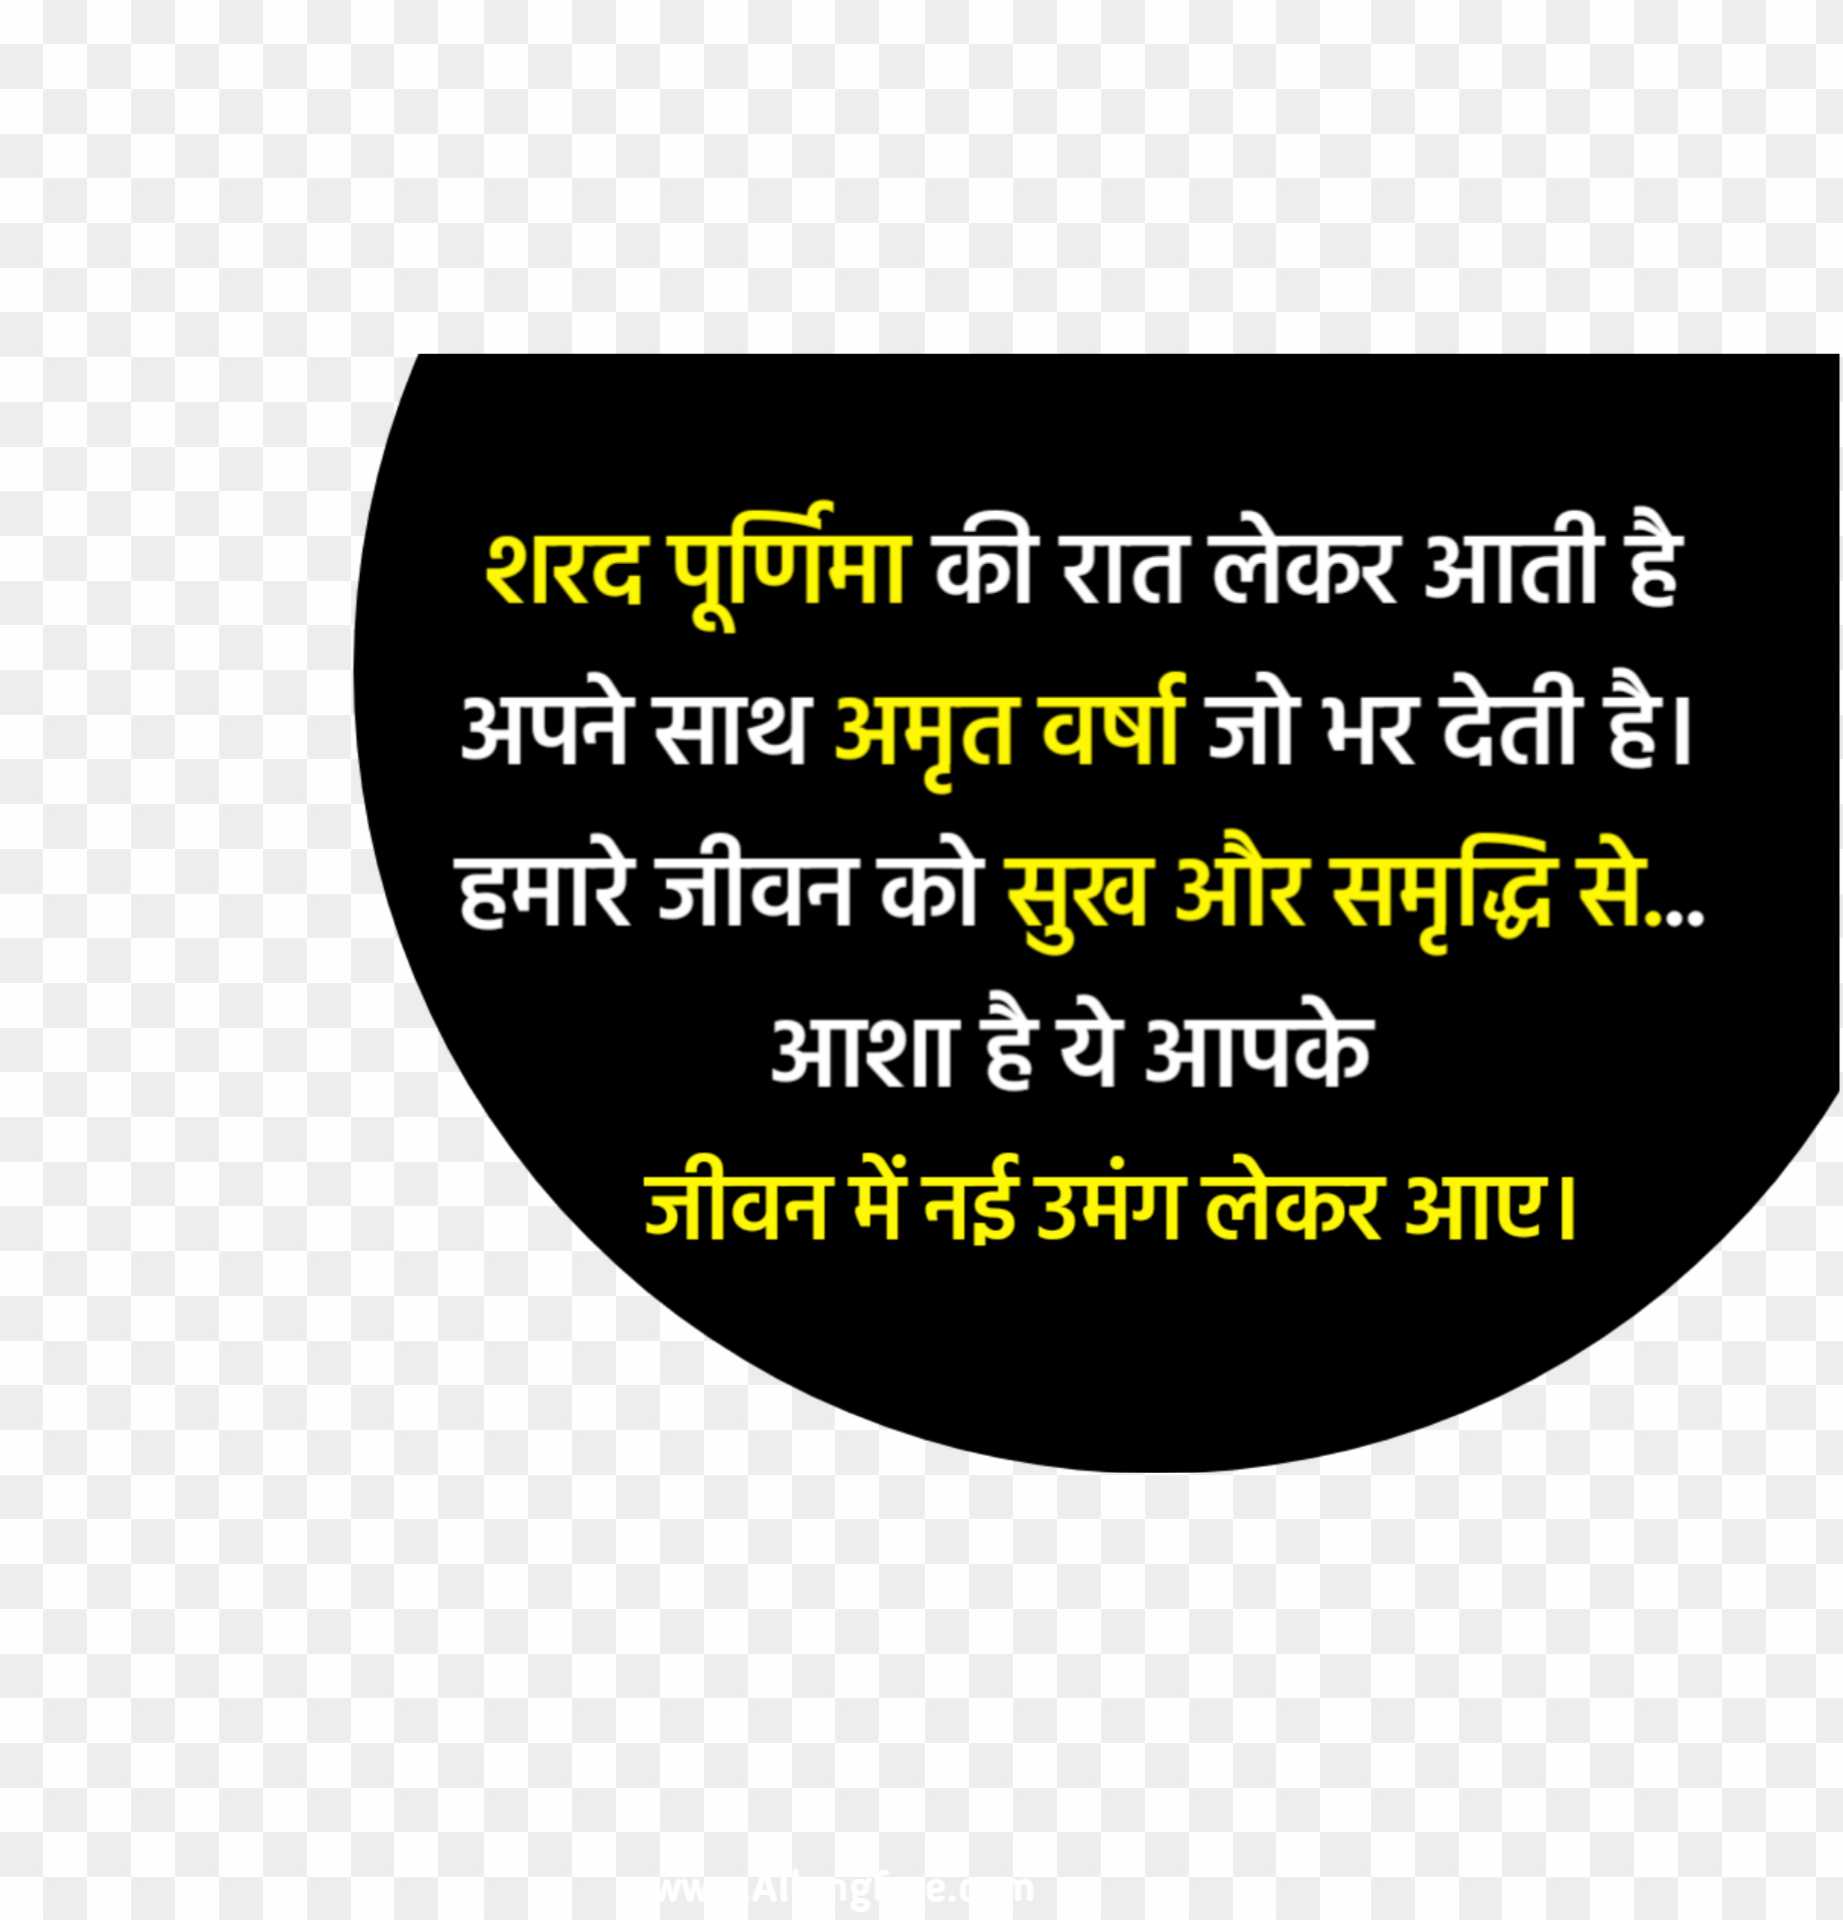 Sharad Purnima quotes in Hindi text PNG 